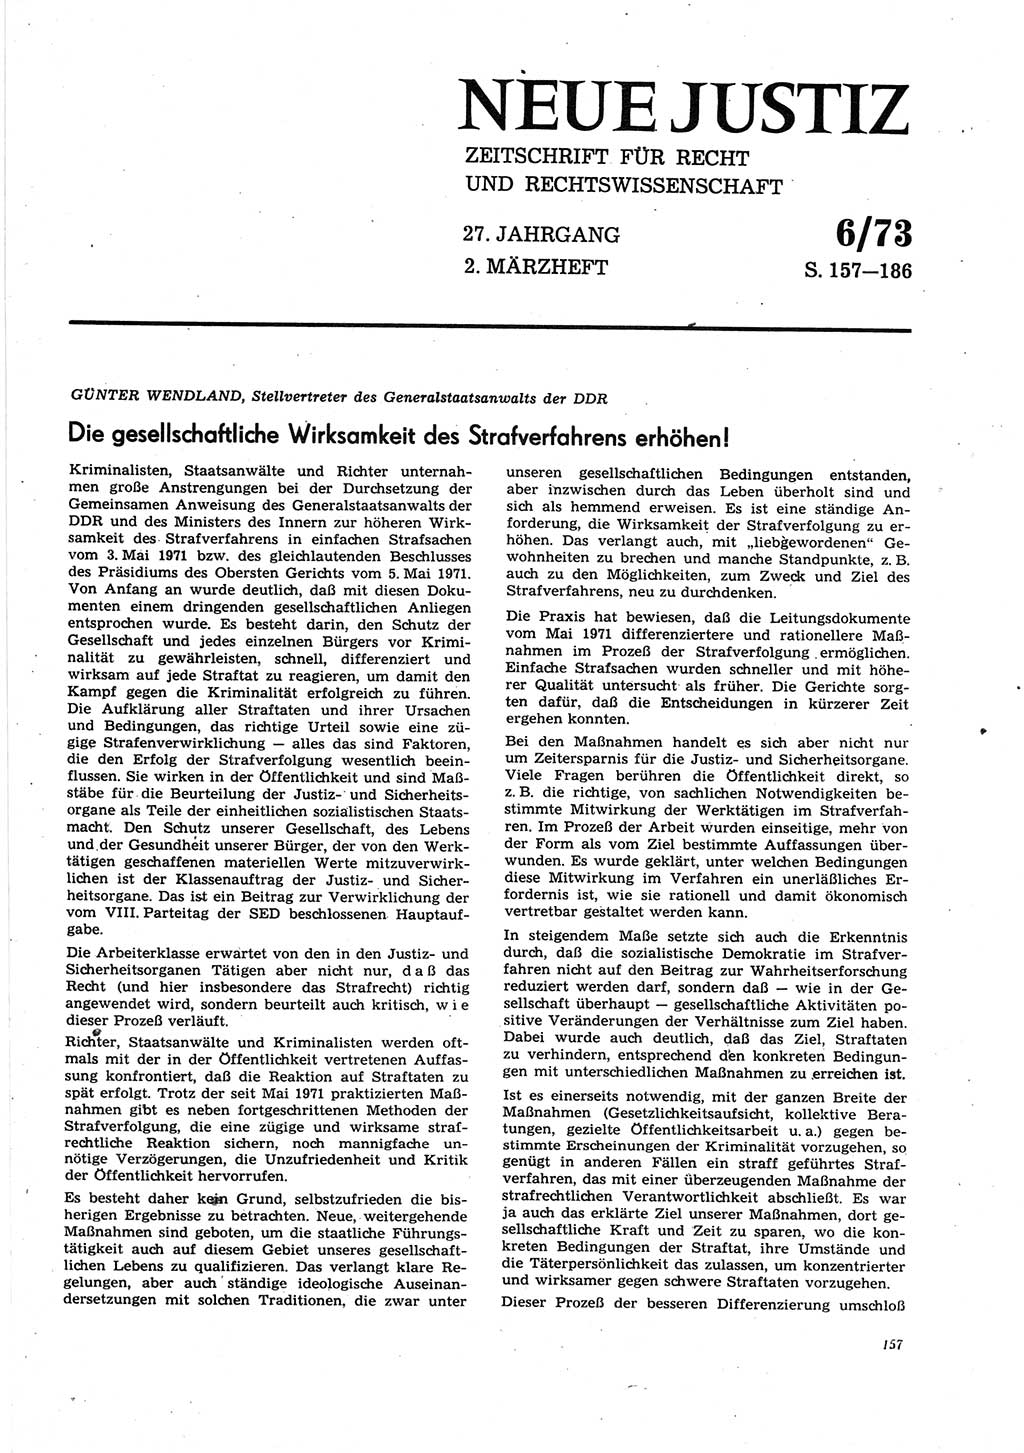 Neue Justiz (NJ), Zeitschrift für Recht und Rechtswissenschaft [Deutsche Demokratische Republik (DDR)], 27. Jahrgang 1973, Seite 157 (NJ DDR 1973, S. 157)